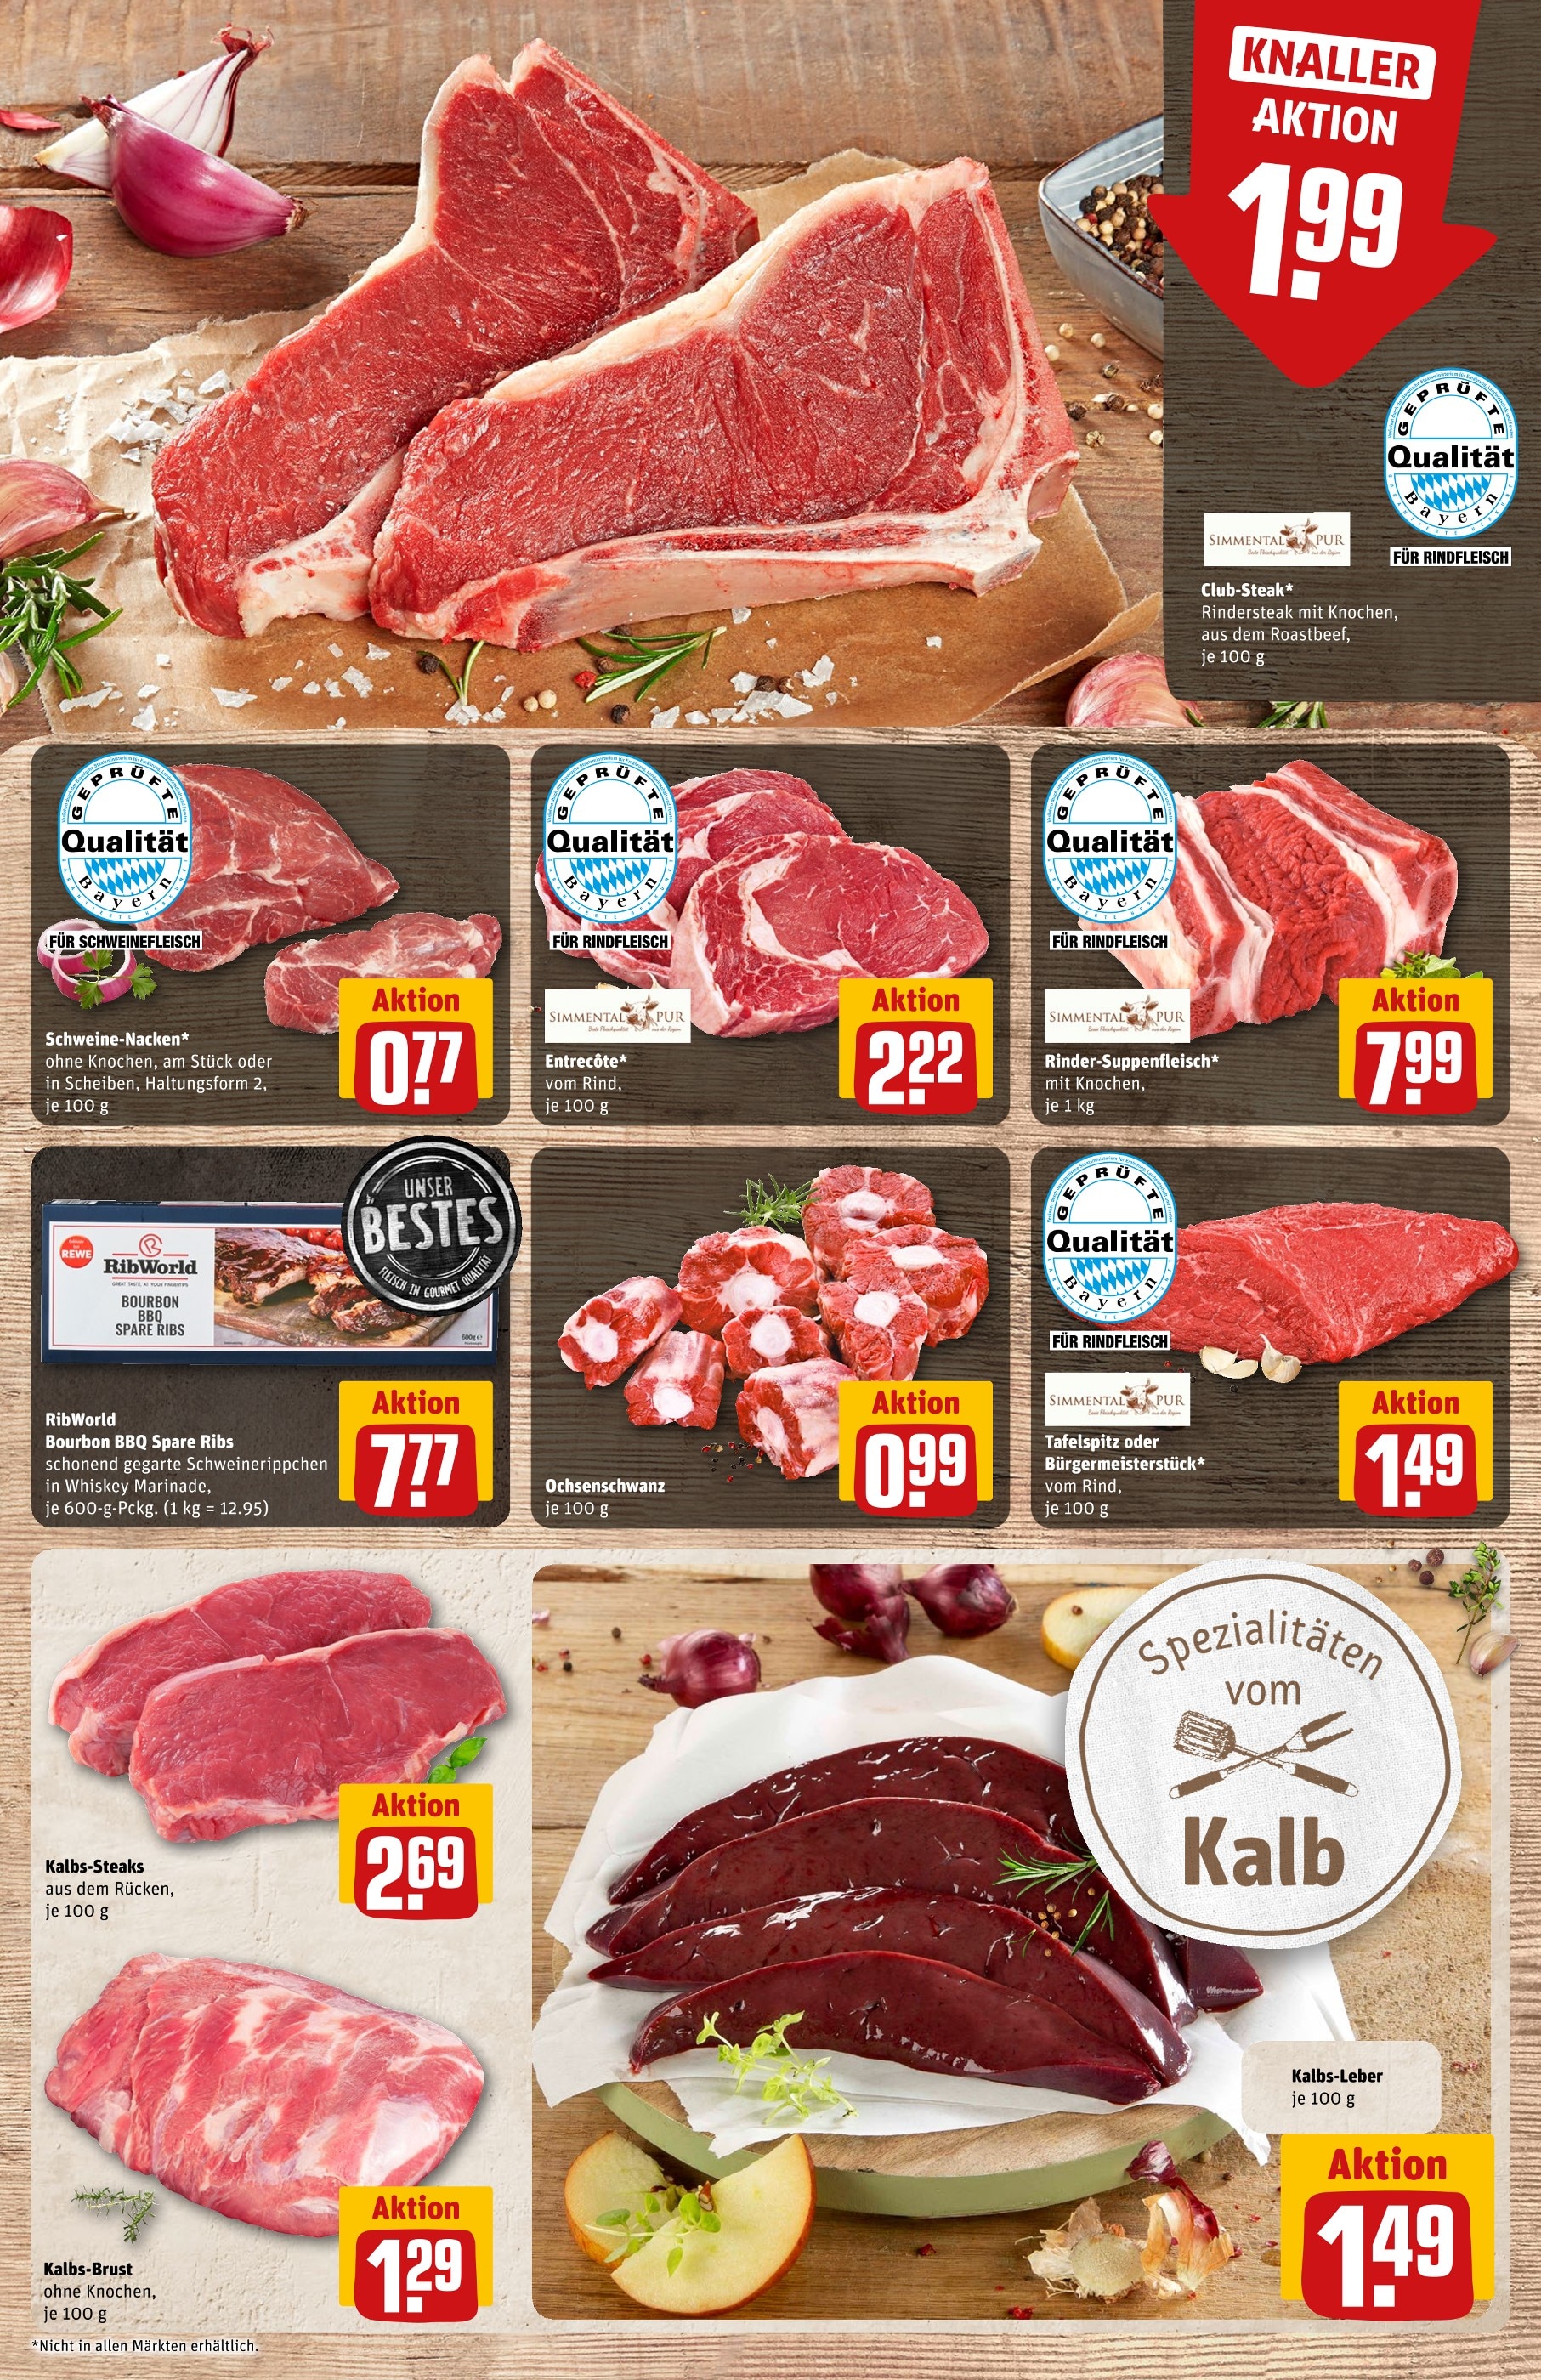 Steak Angebote der Woche ᐅ Finde den günstigsten Preis!